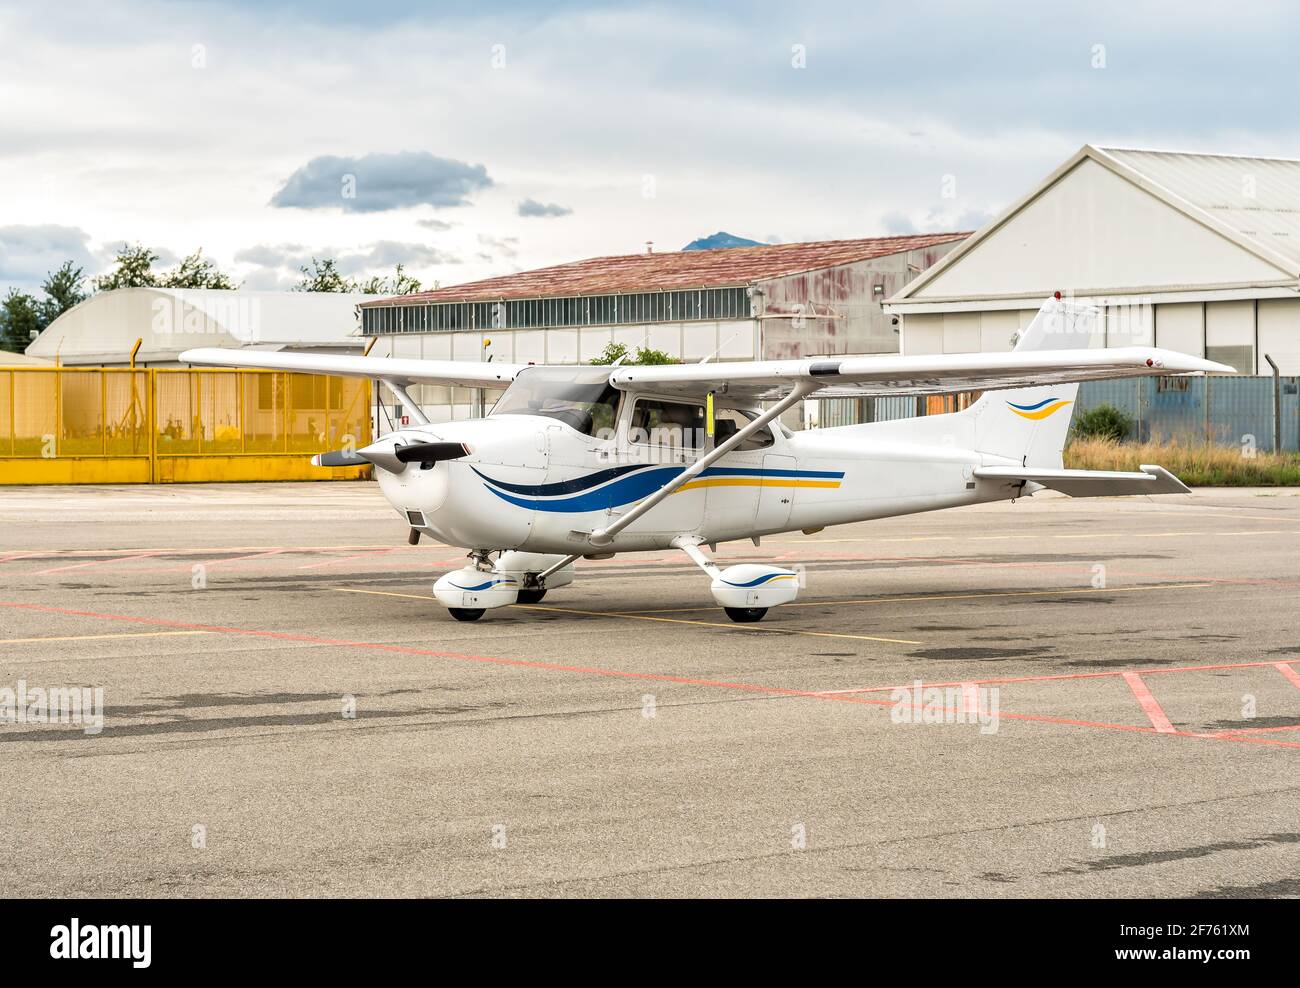 Kleines Privatflugzeug Cessna, geparkt auf dem kleinen Flughafen Venegono, Provinz Varese, Italien Stockfoto